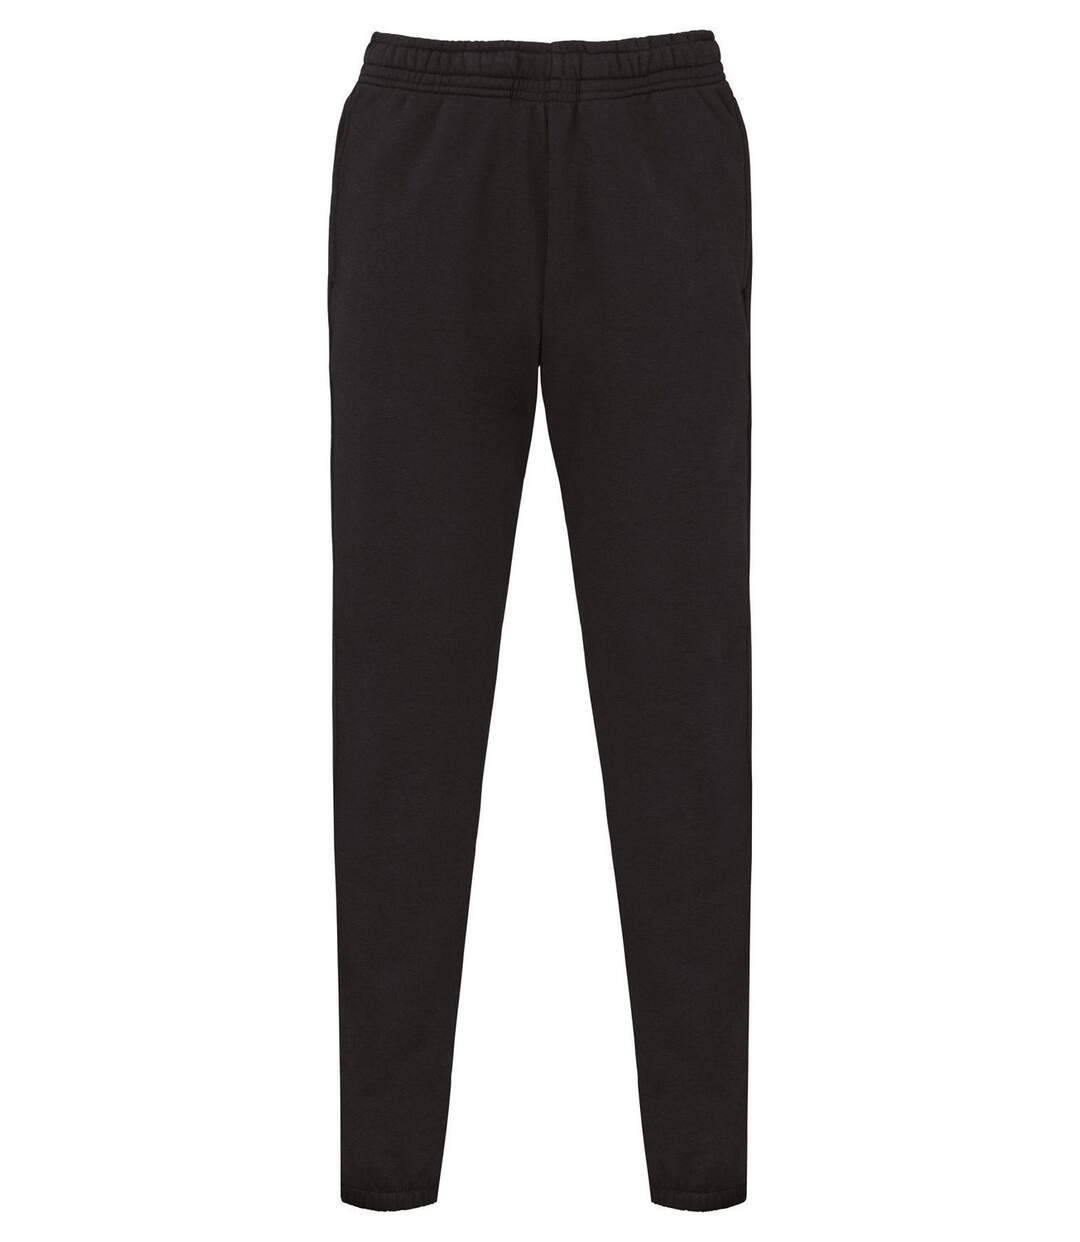 Pantalon jogging molleton - Coton bio et polyester recyclé - Homme - K7025 - noir